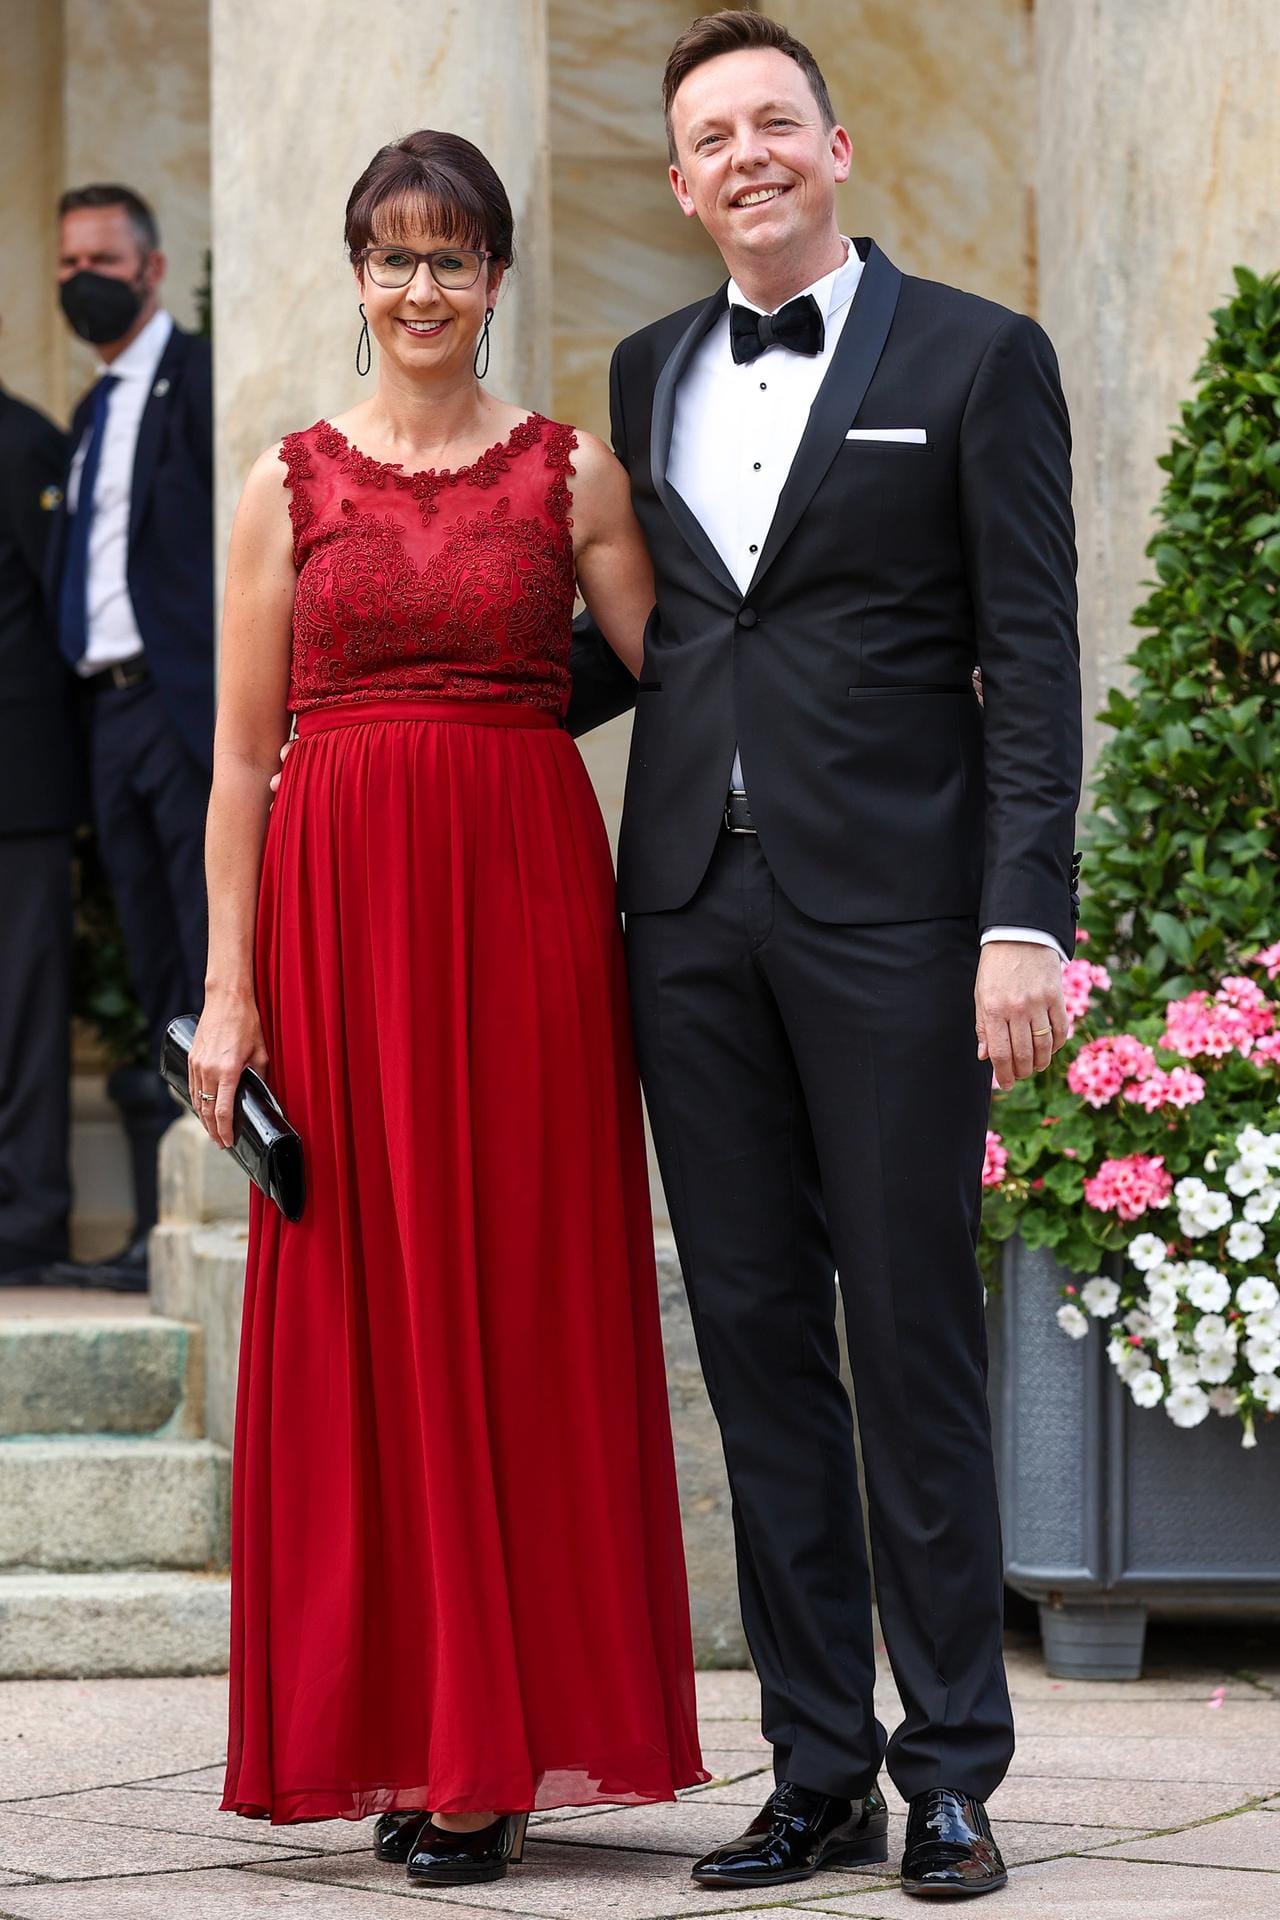 Tobias Hans, Ministerpräsident des Saarlandes, und seine Frau Tanja